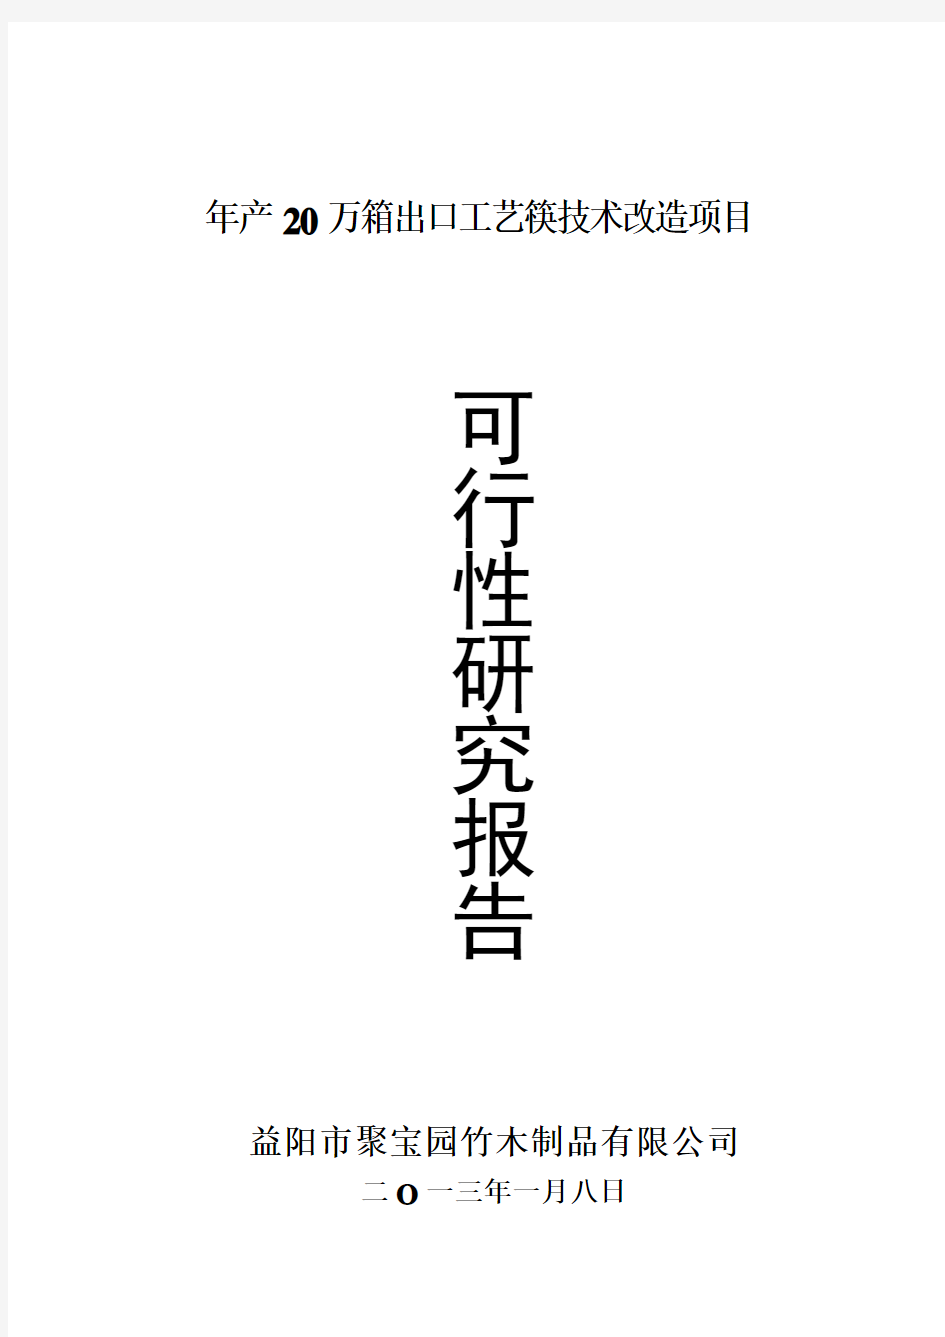 益阳市聚宝园竹木制品有限公司年产20万箱出口工艺筷技术改造项目可行性研究报告